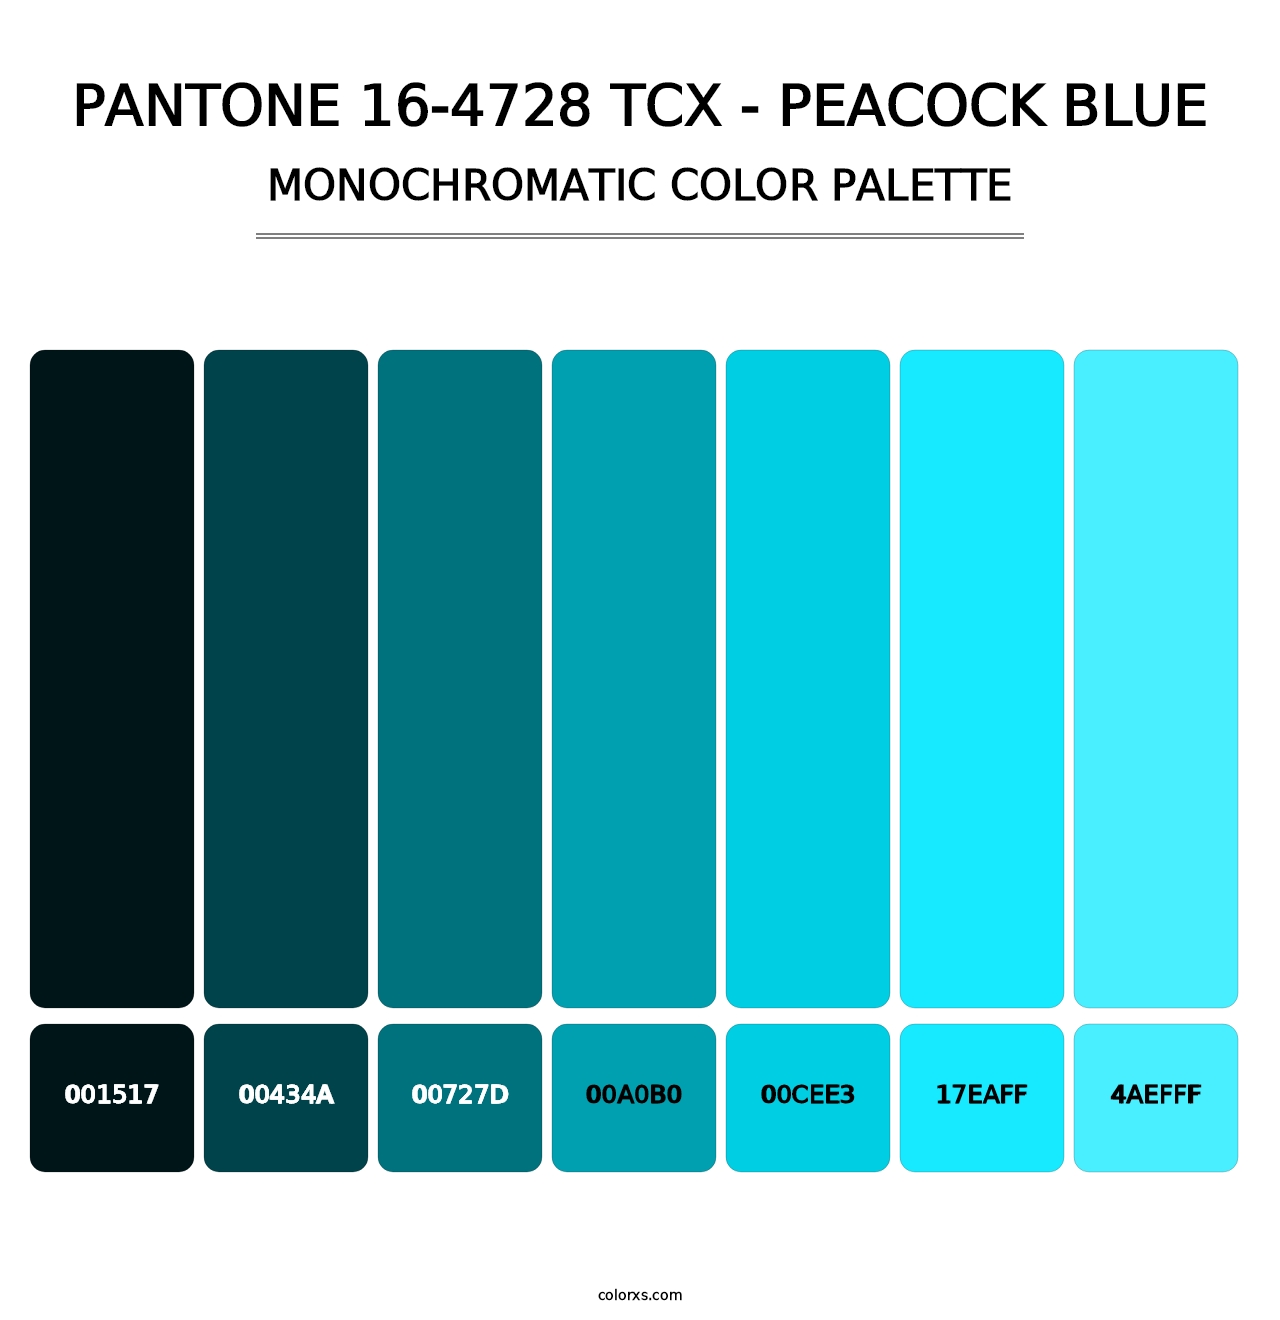 PANTONE 16-4728 TCX - Peacock Blue - Monochromatic Color Palette